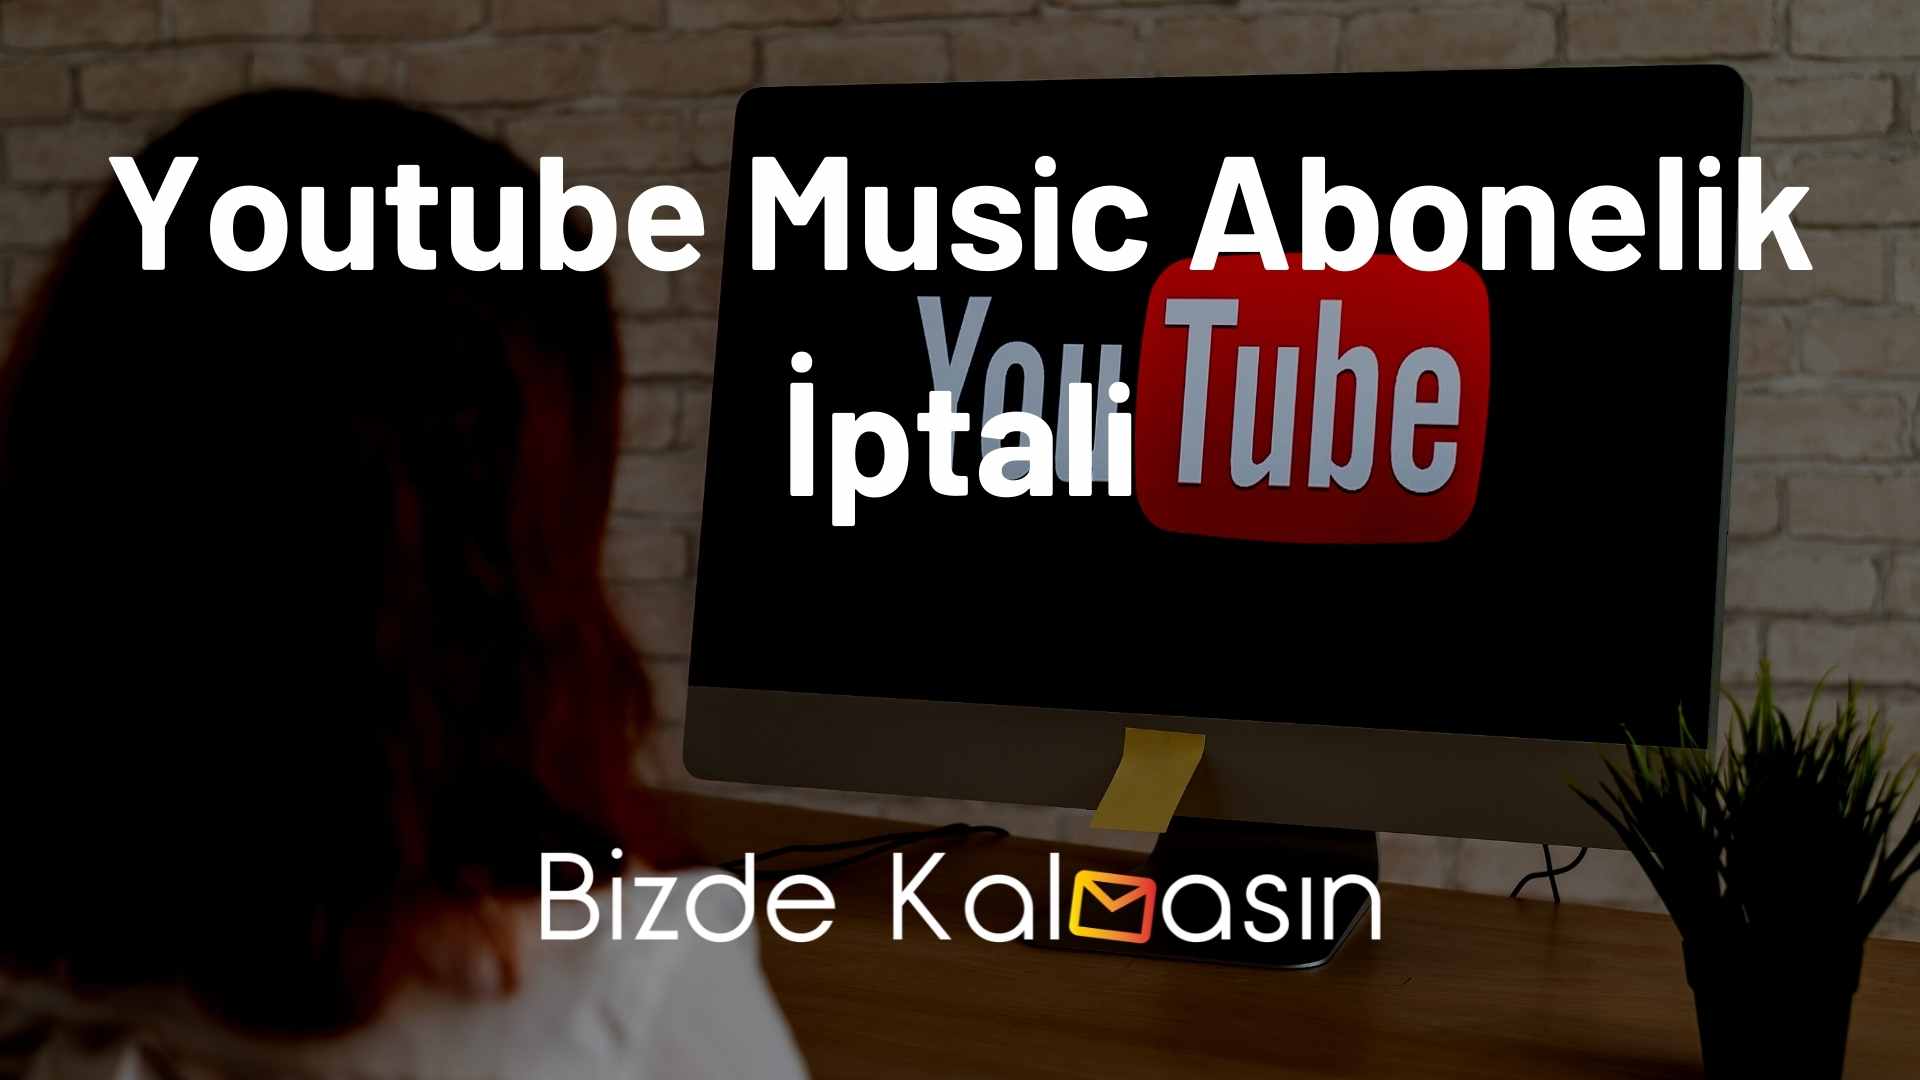 Youtube Music Premium İptal Etme Nasıl Yapılır? Çok Basit! Bizde